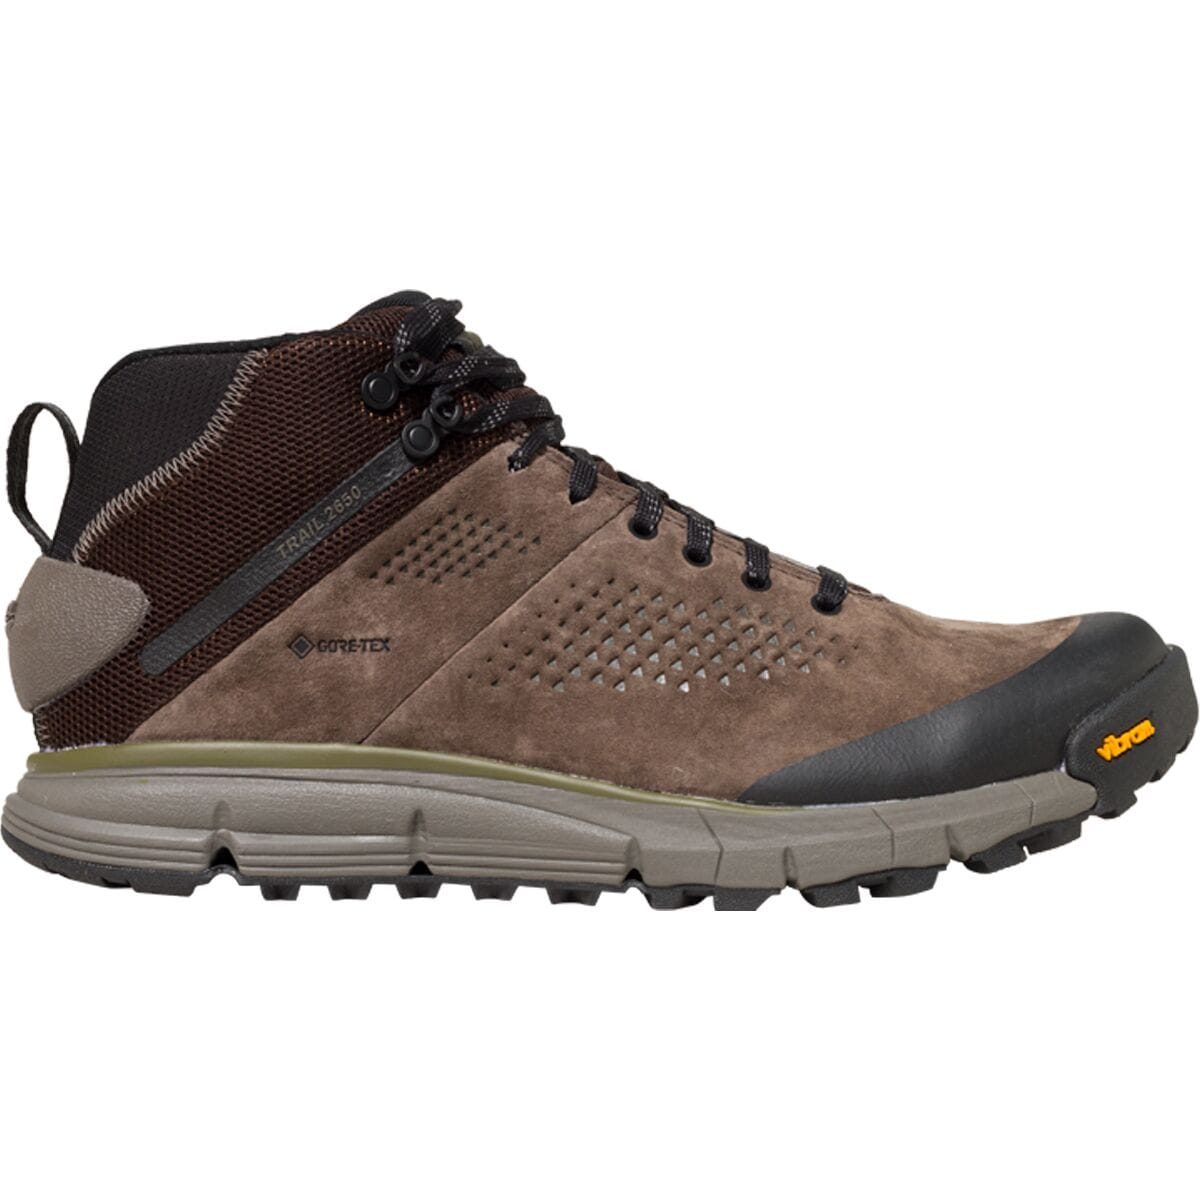 Trail 2650 GTX Mid Hiking Boot - Men